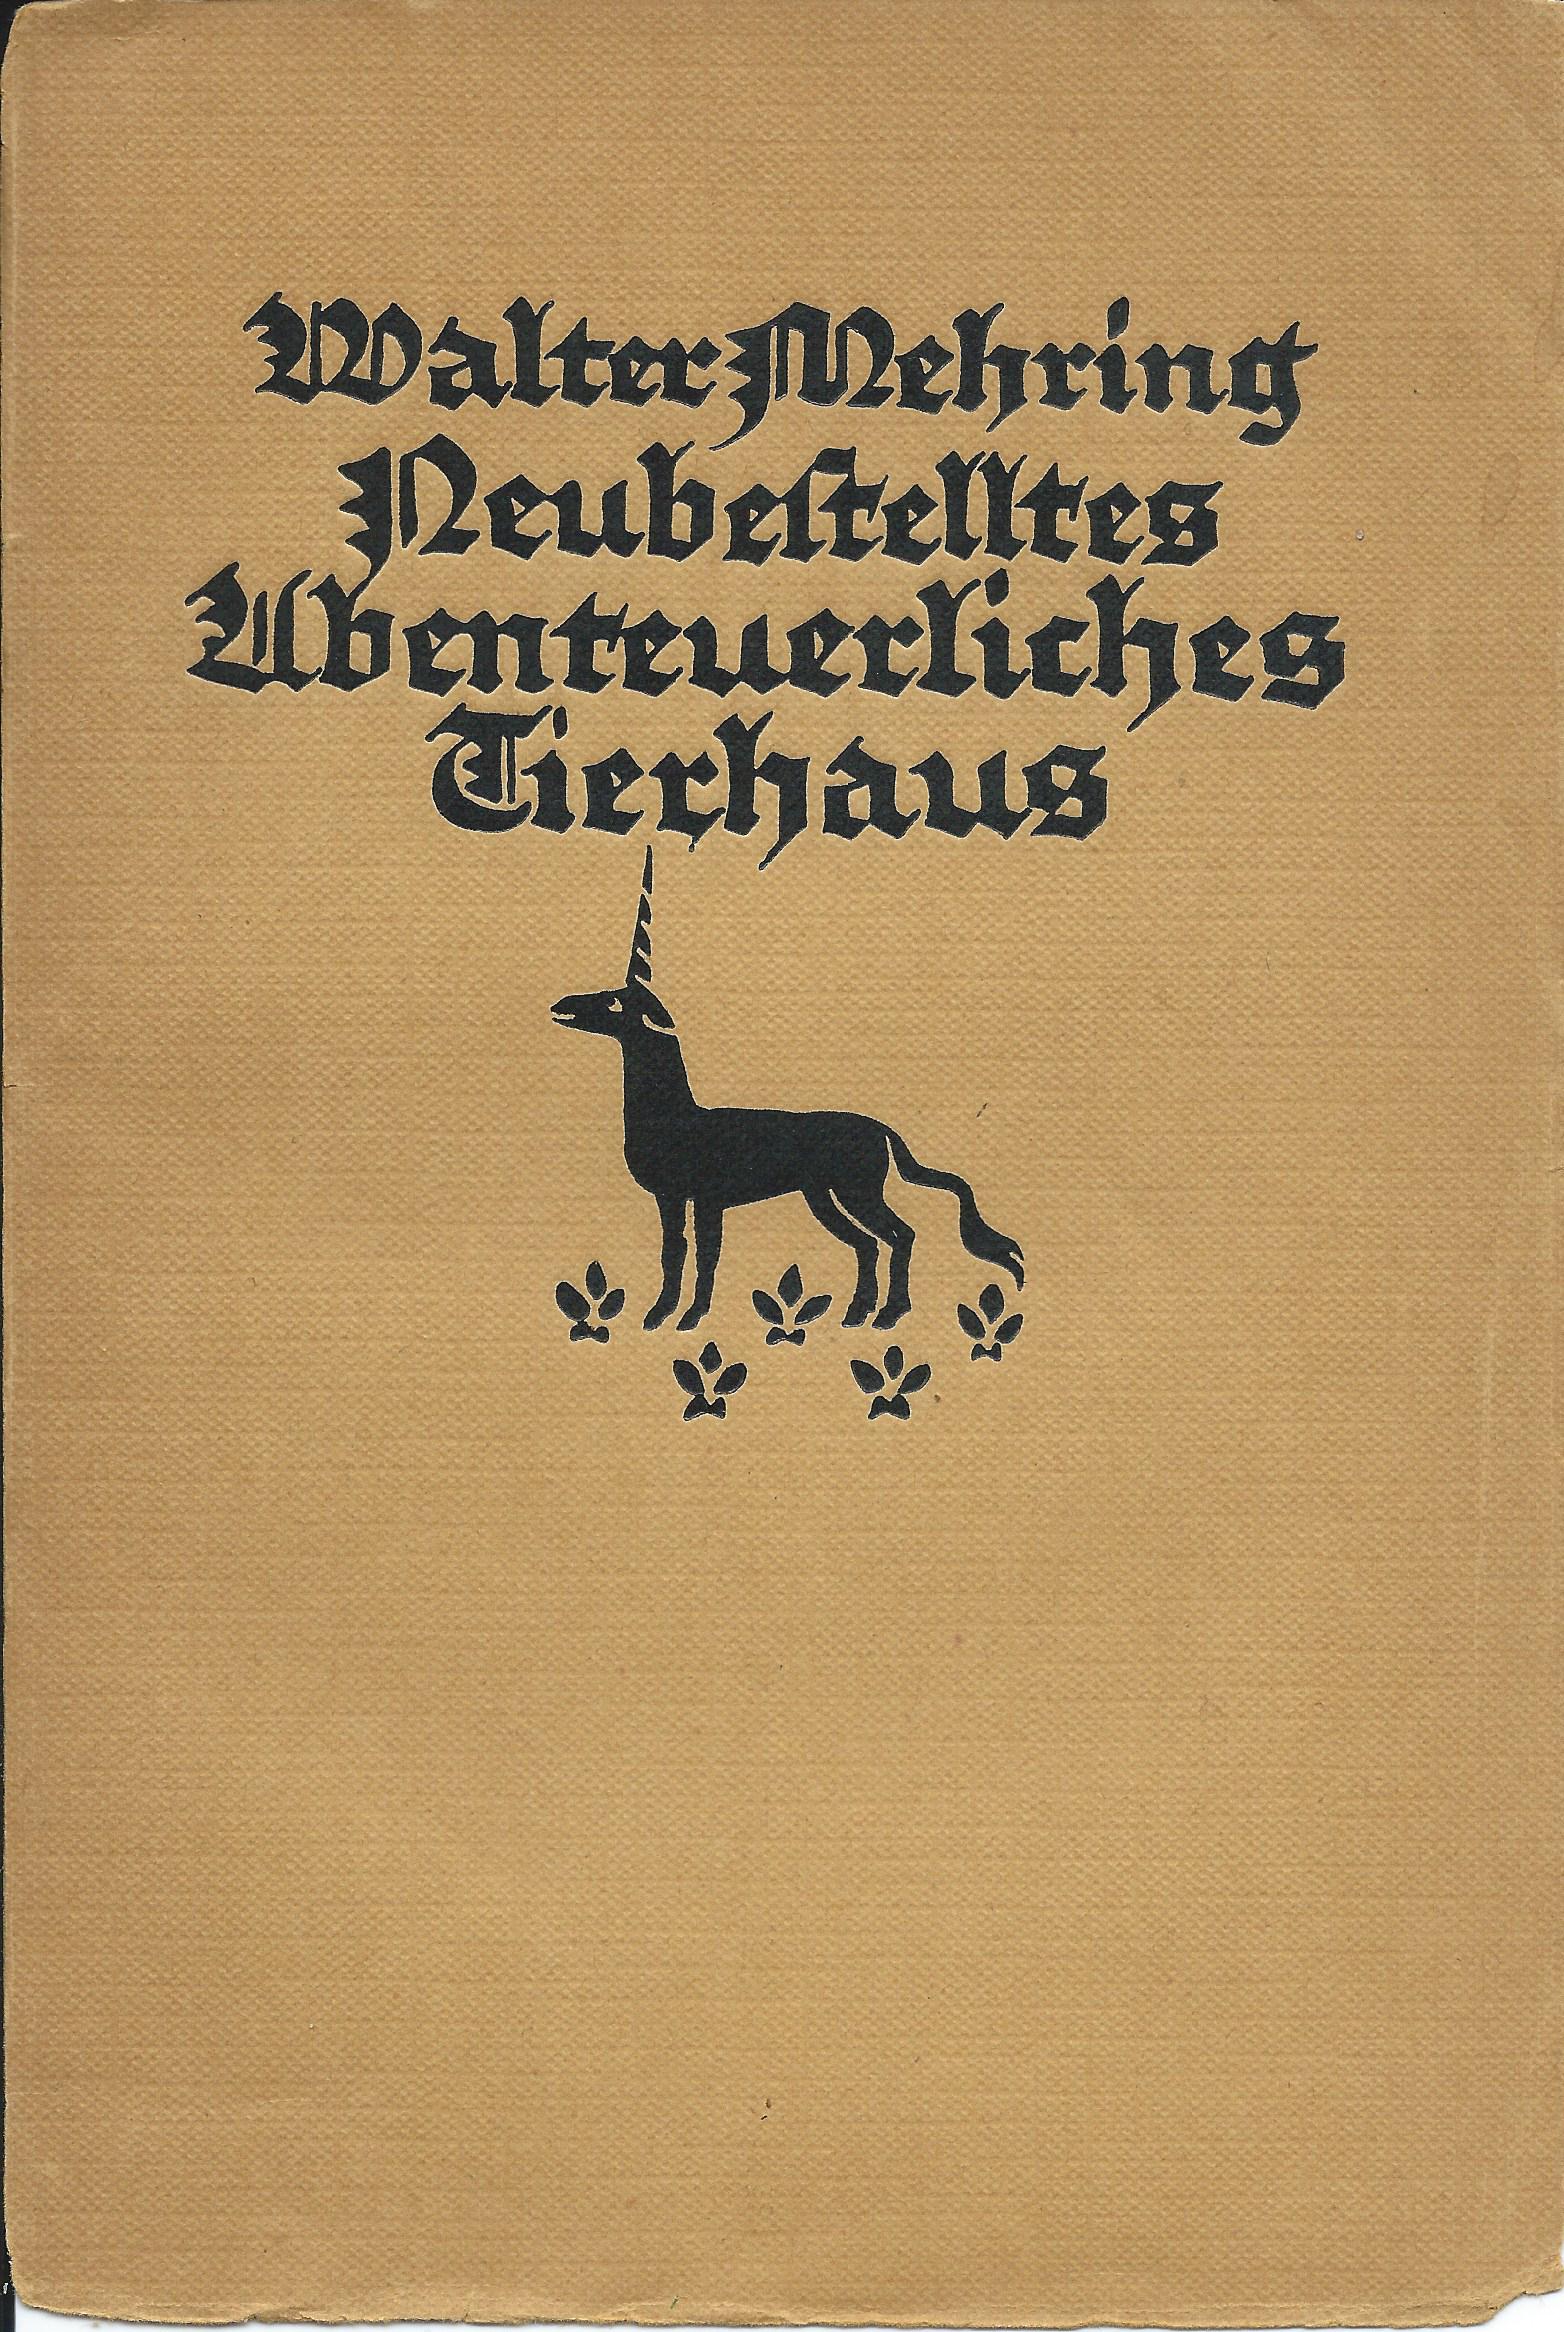 Neubestelltes Abenteuerliches Tierhaus (1925)